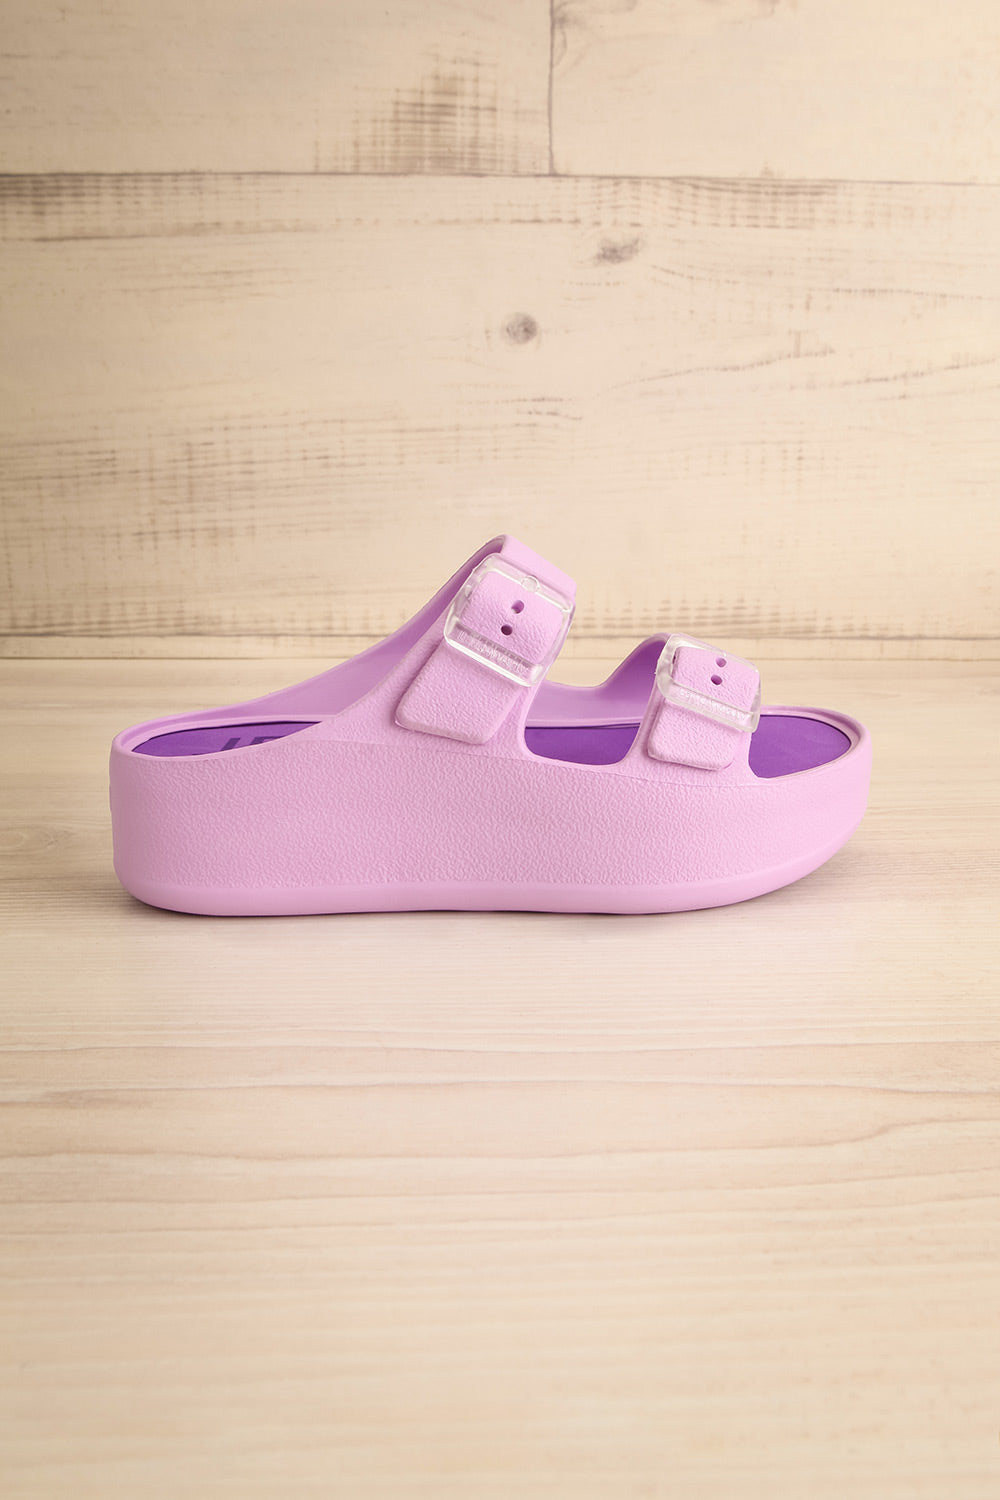 Fenix Lavender Double Buckle Platform Sandals | La petite garçonne side view